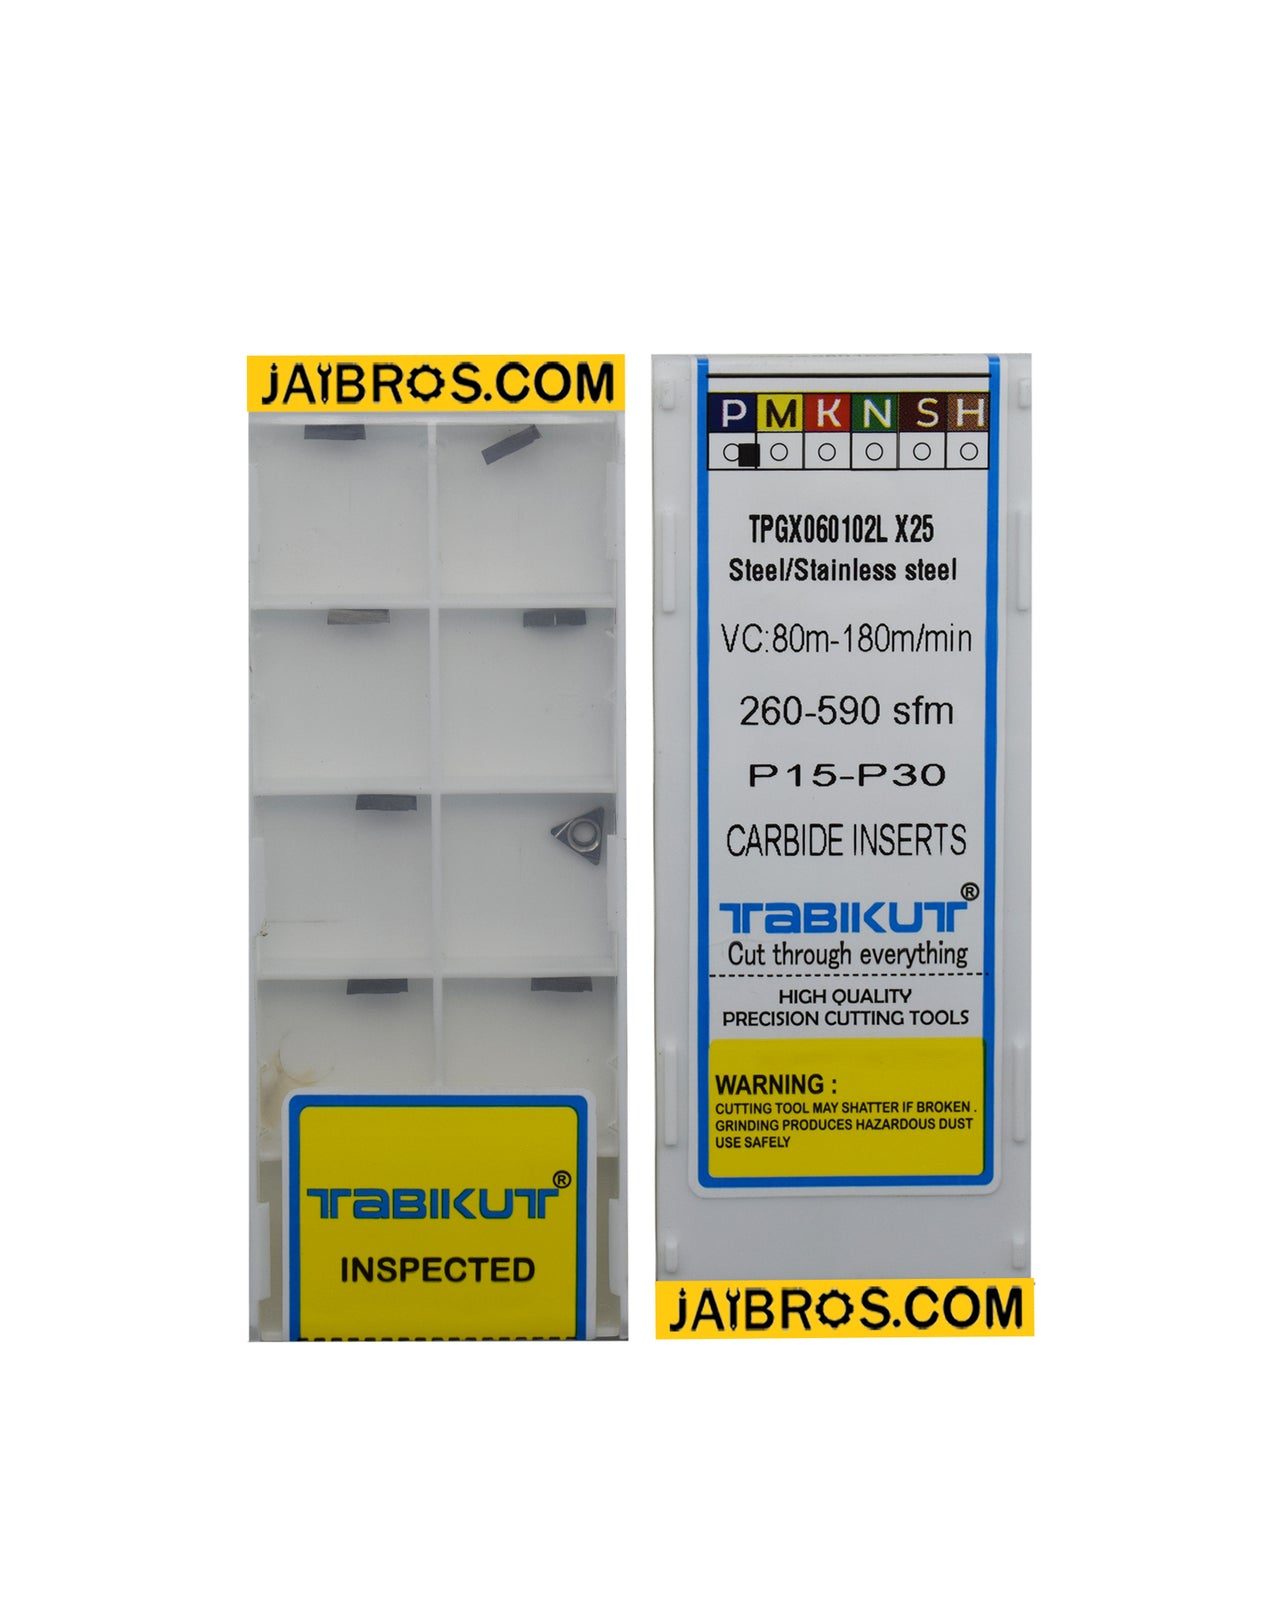 tpgx060102/04L x25 TABIKUT carbide grade pack of 10